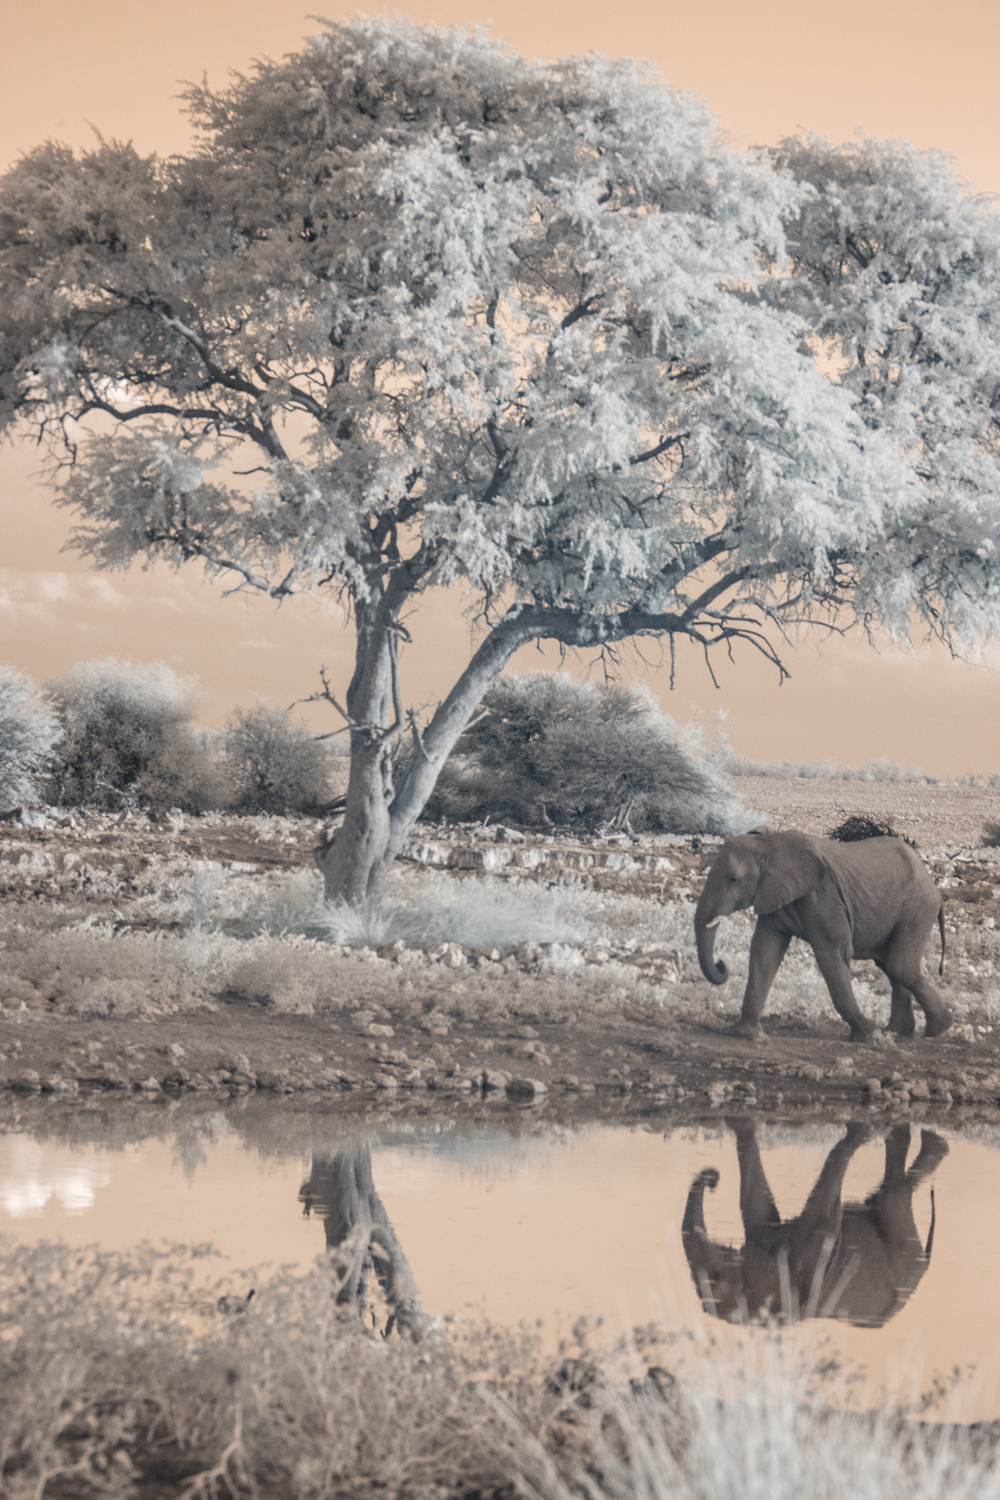  Elephant at Etosha National Park.&nbsp; 